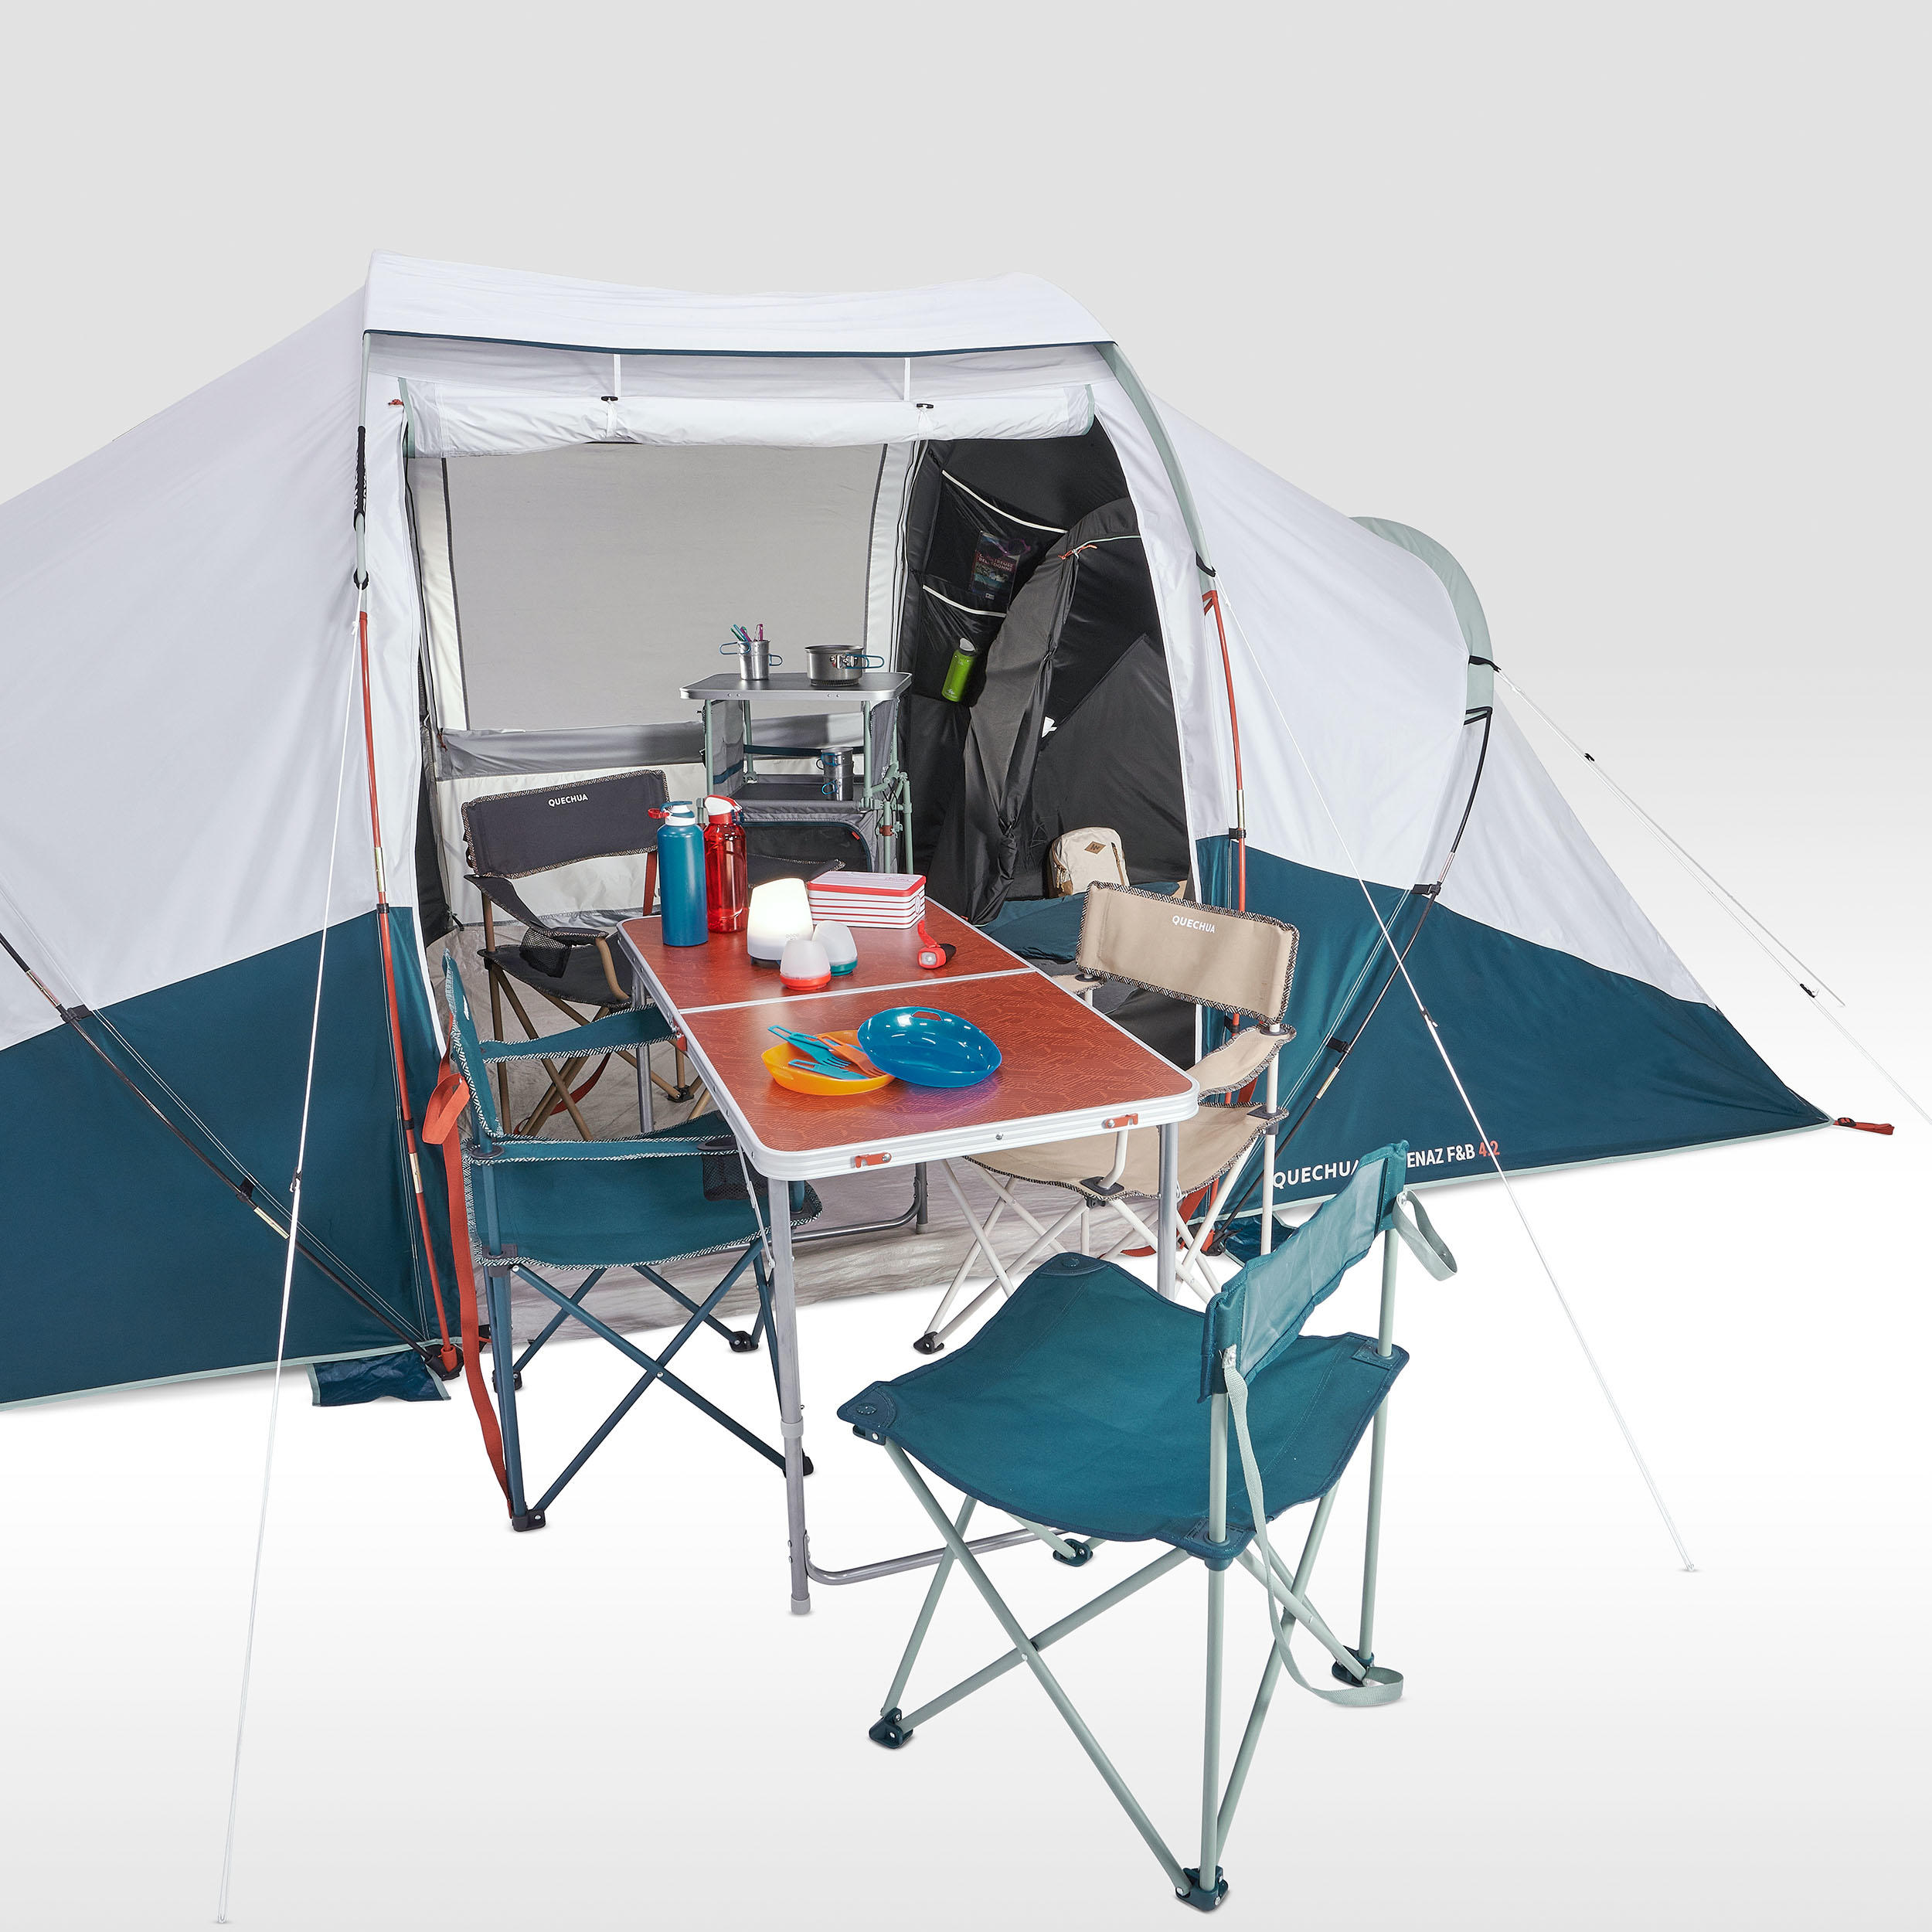 Tente de camping pour 4 personnes - ARPENAZ 4.2 Fresh & Black - QUECHUA